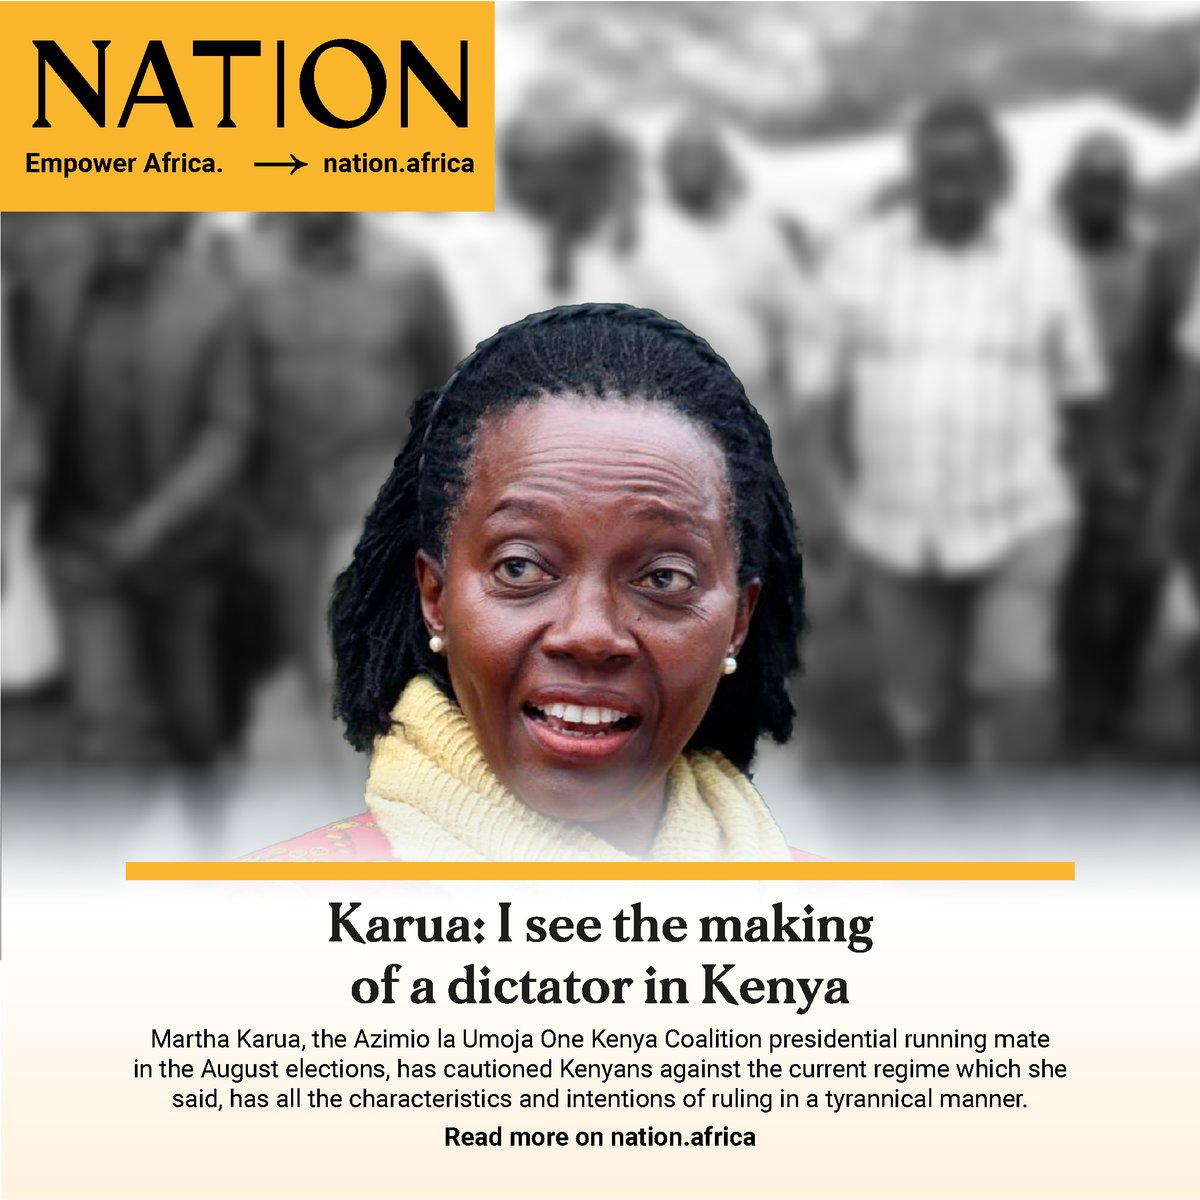 Martha Karua: I see the making of a dictator in Kenya
#NationNewsplex